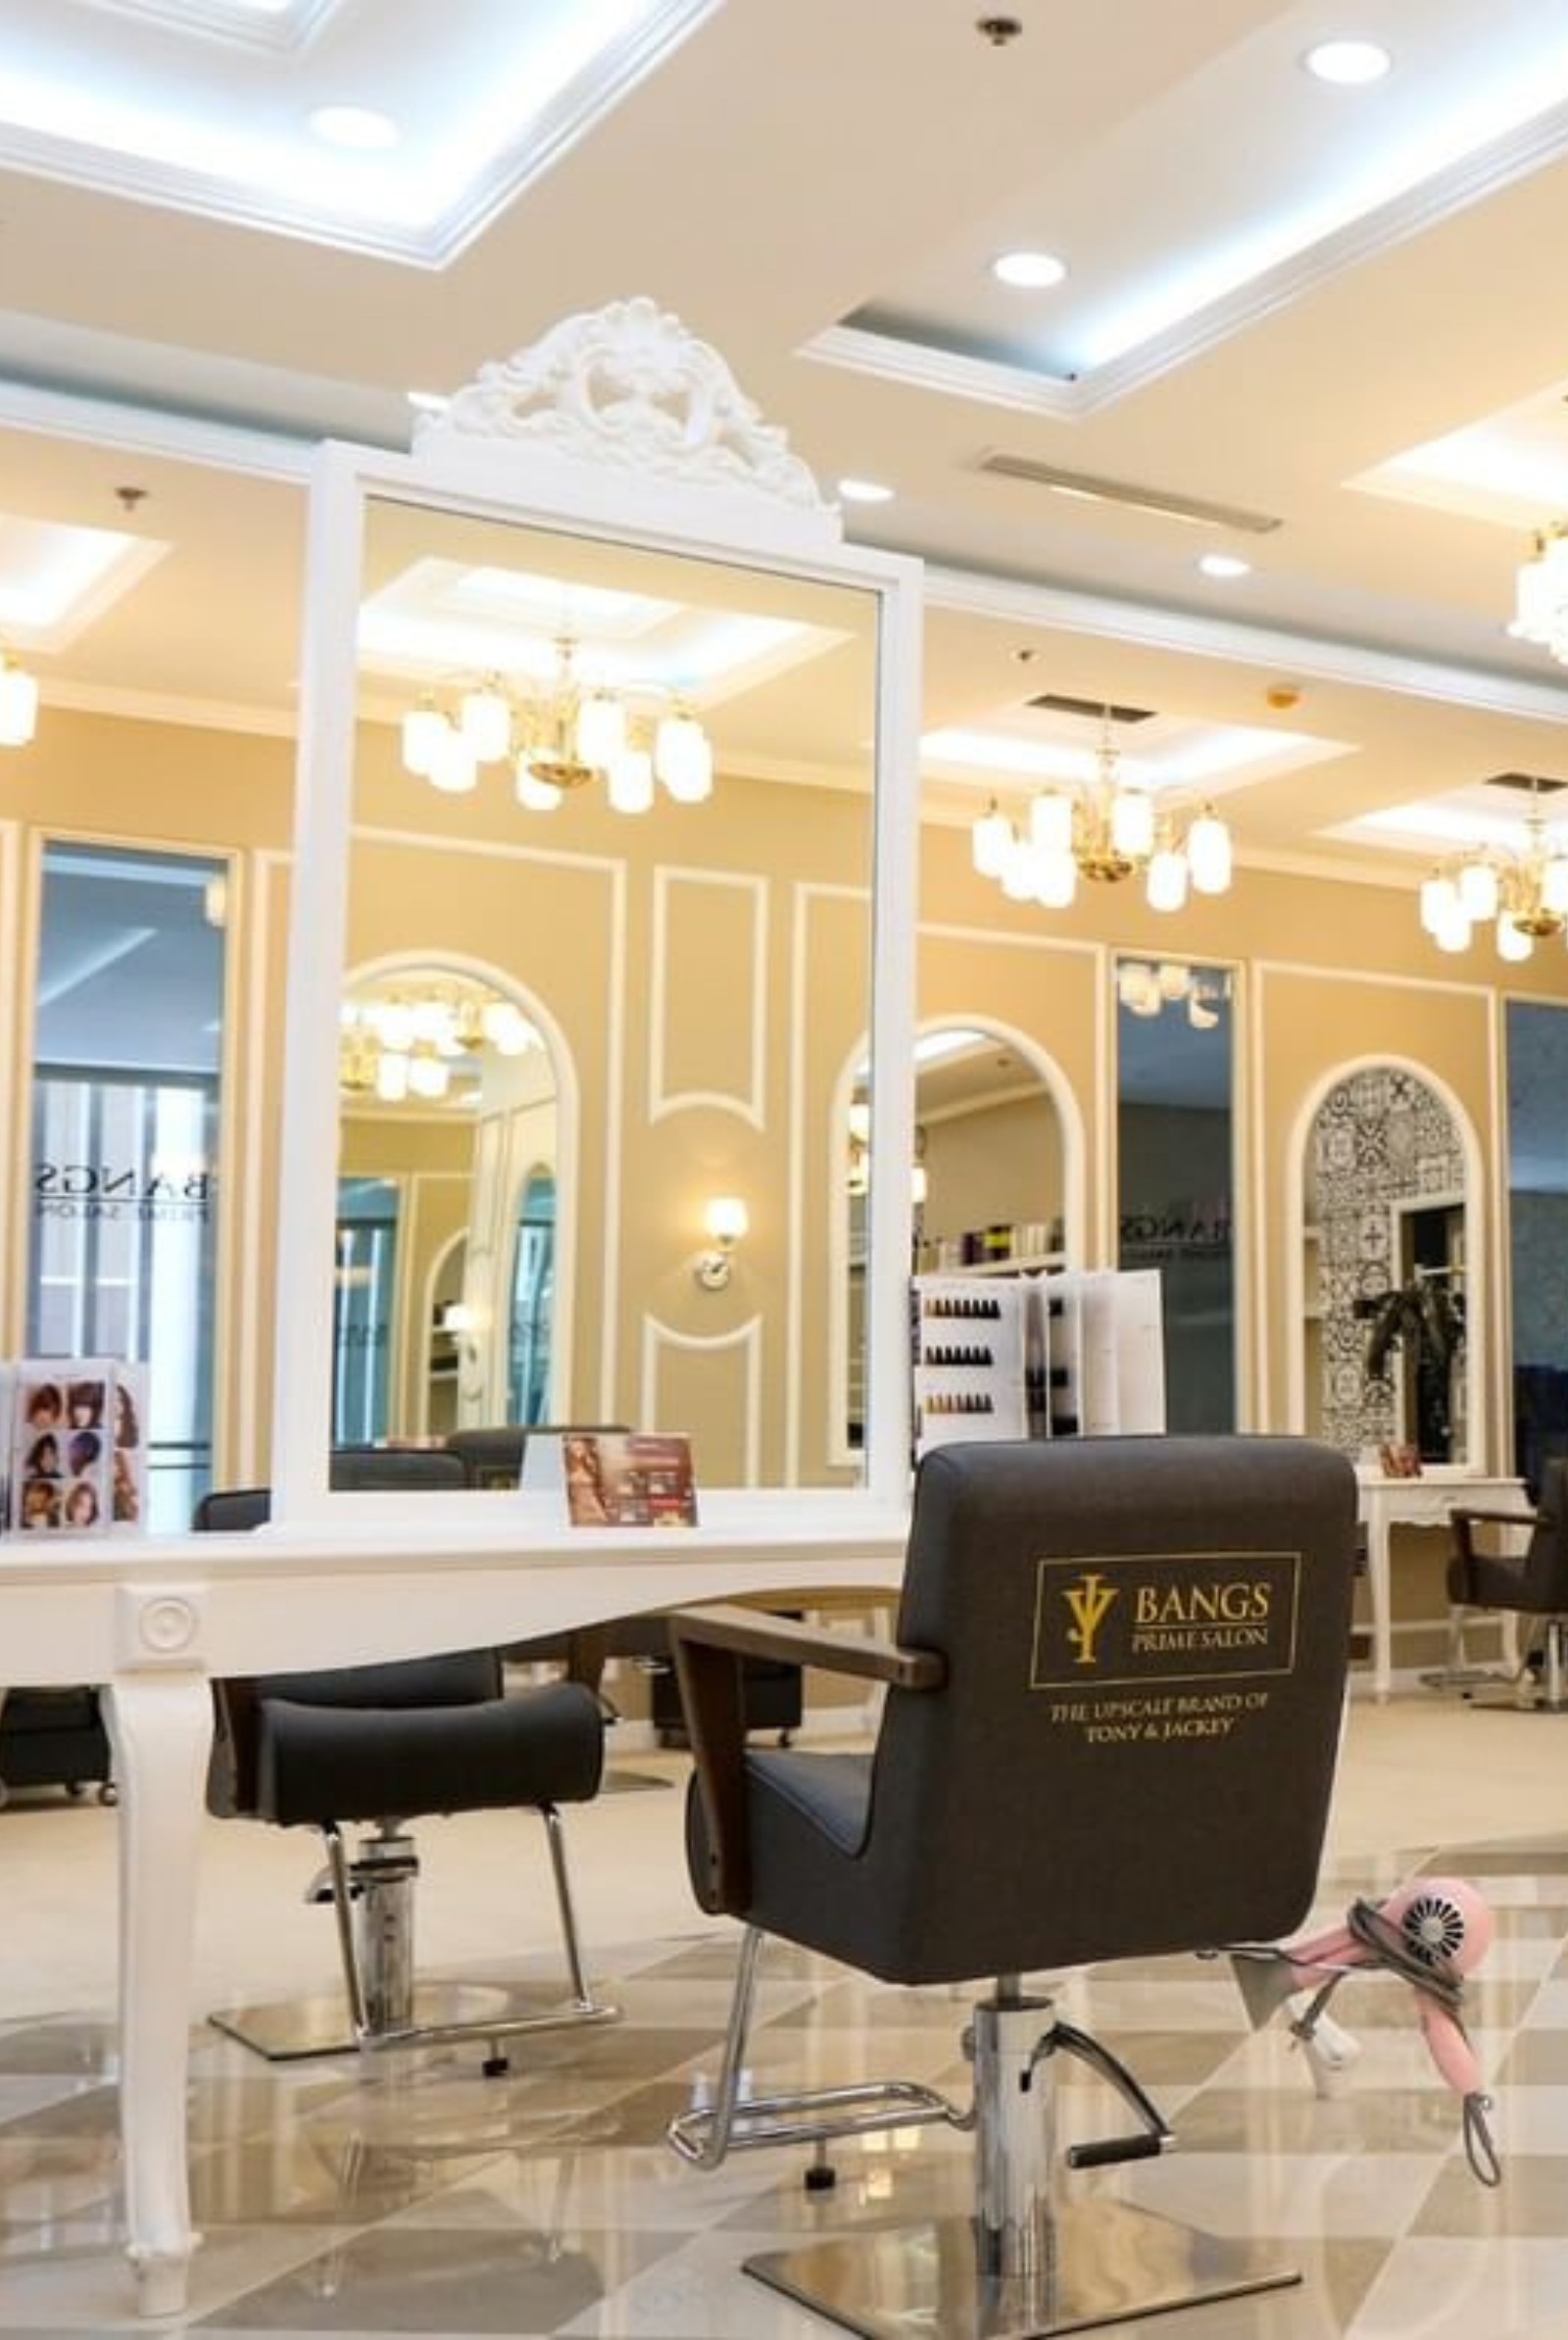 Korean hair salons Metro Manila - Bangs Prime Salon